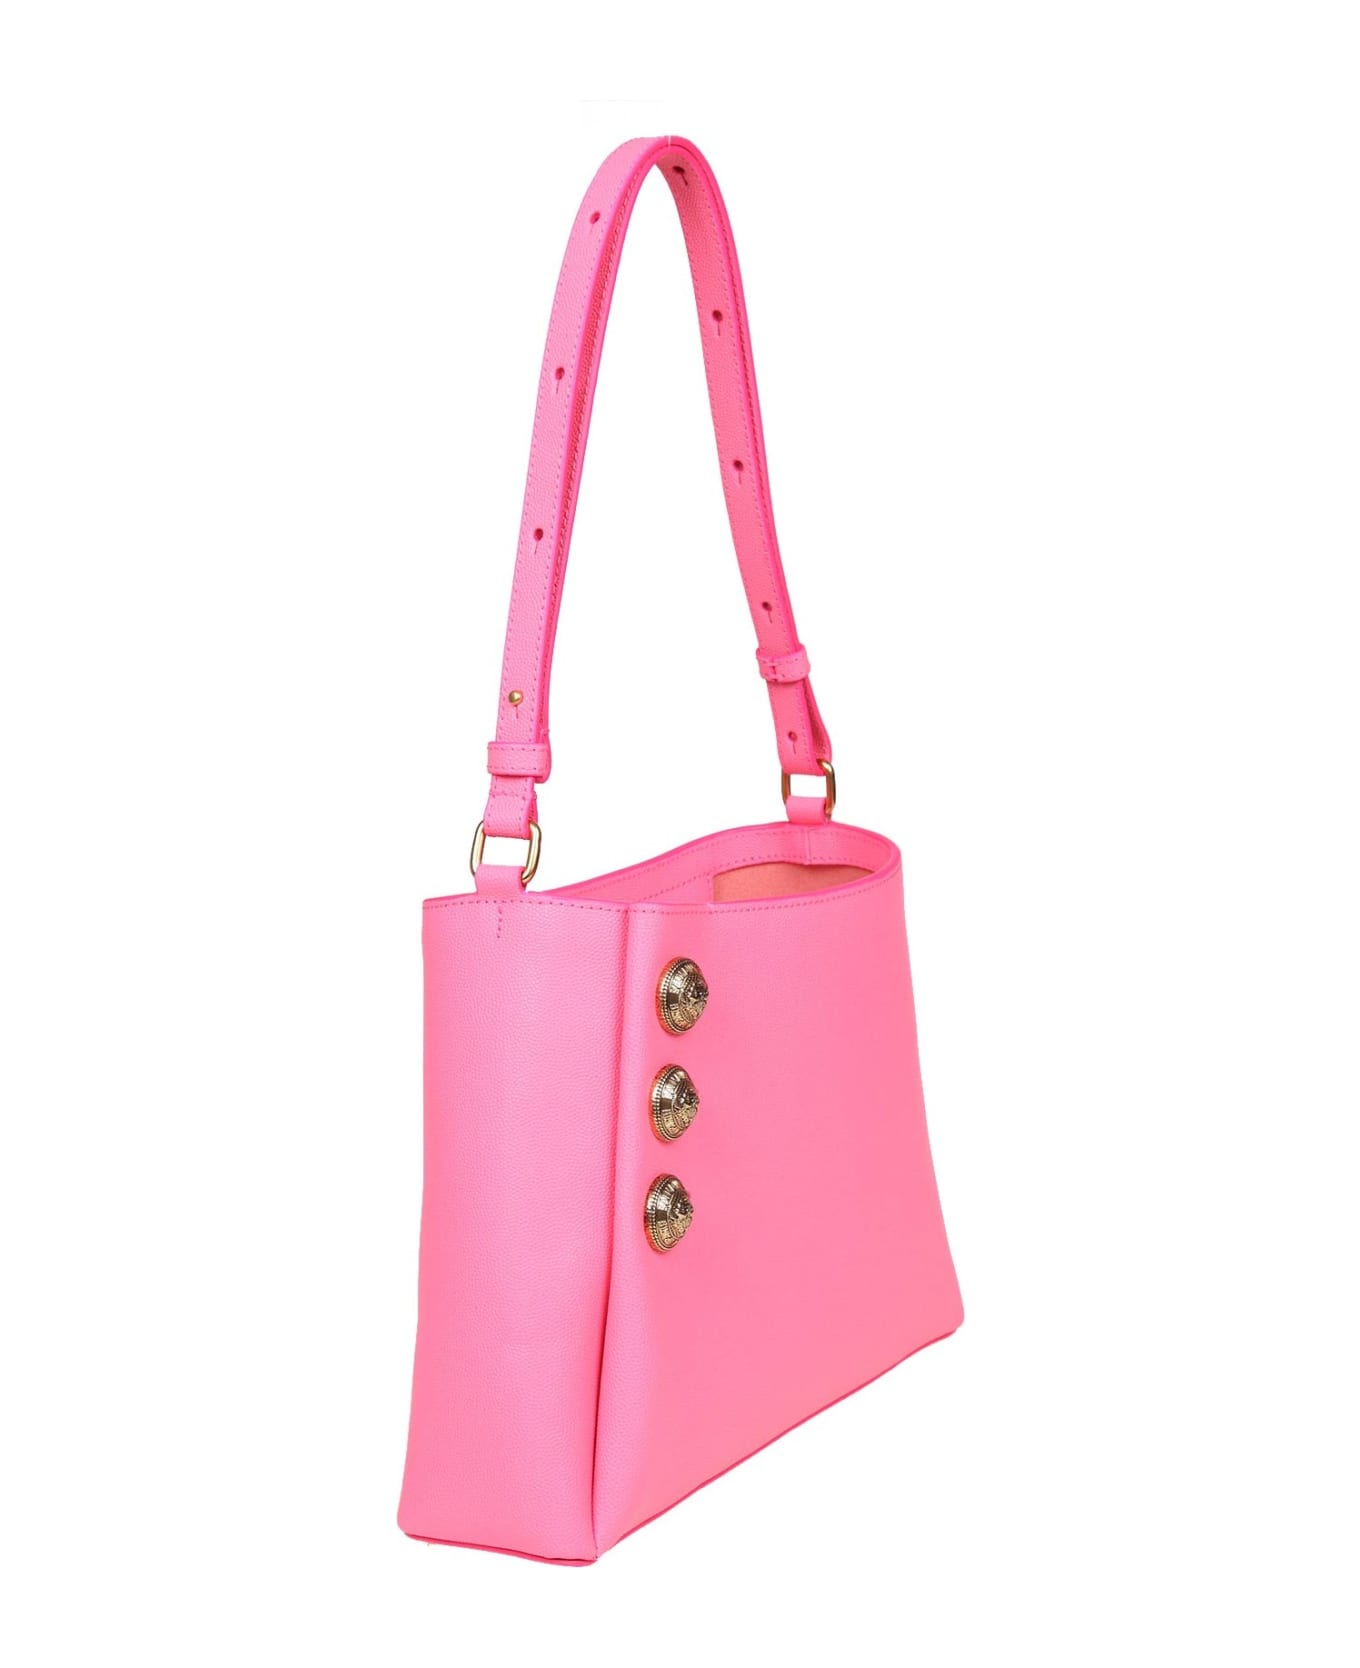 Balmain Emblem Shoulder Bag In Pink Leather - Bubblegum